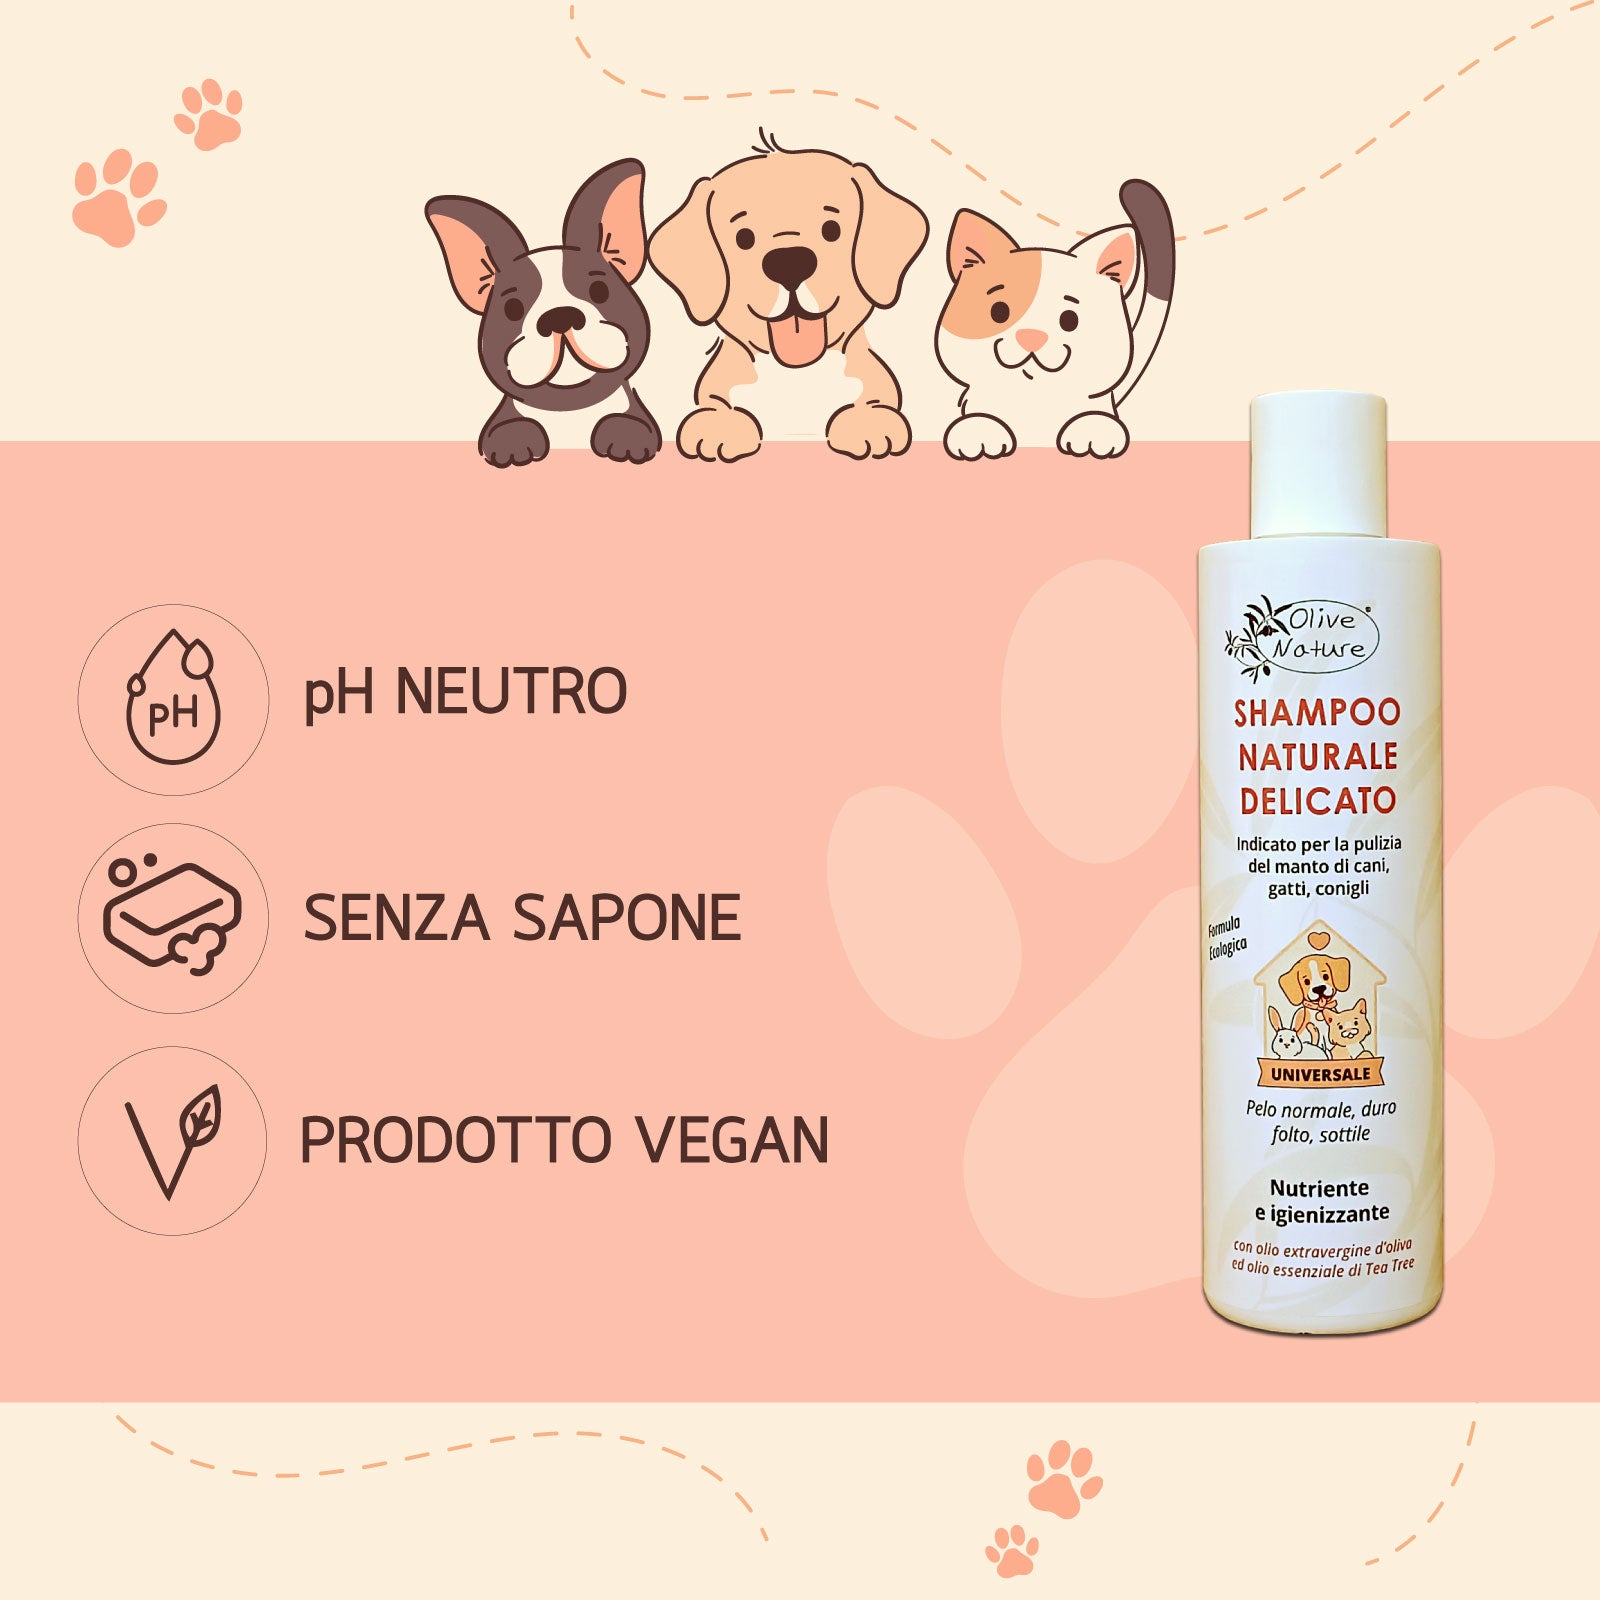 pH neutro, senza sapone, prodotto Vegan - Shampoo naturale delicato per animali - Olive Nature